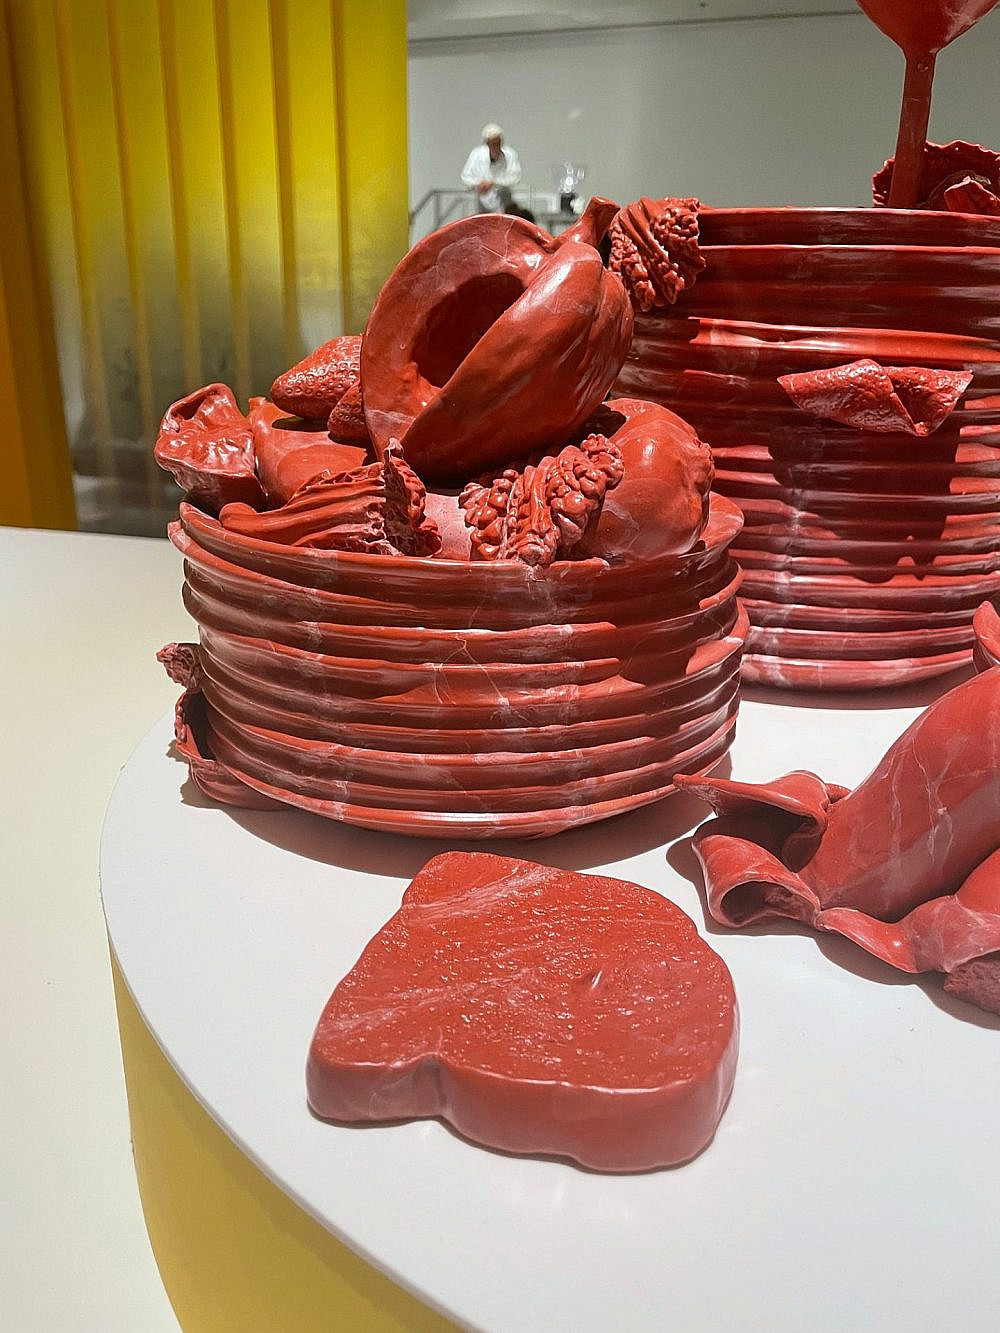 אוכל או בשר נא? עבודה של רוני לנדה, תערוכת אוכל במוזיאון העיצוב חולון (צילום: רעות ברנע)